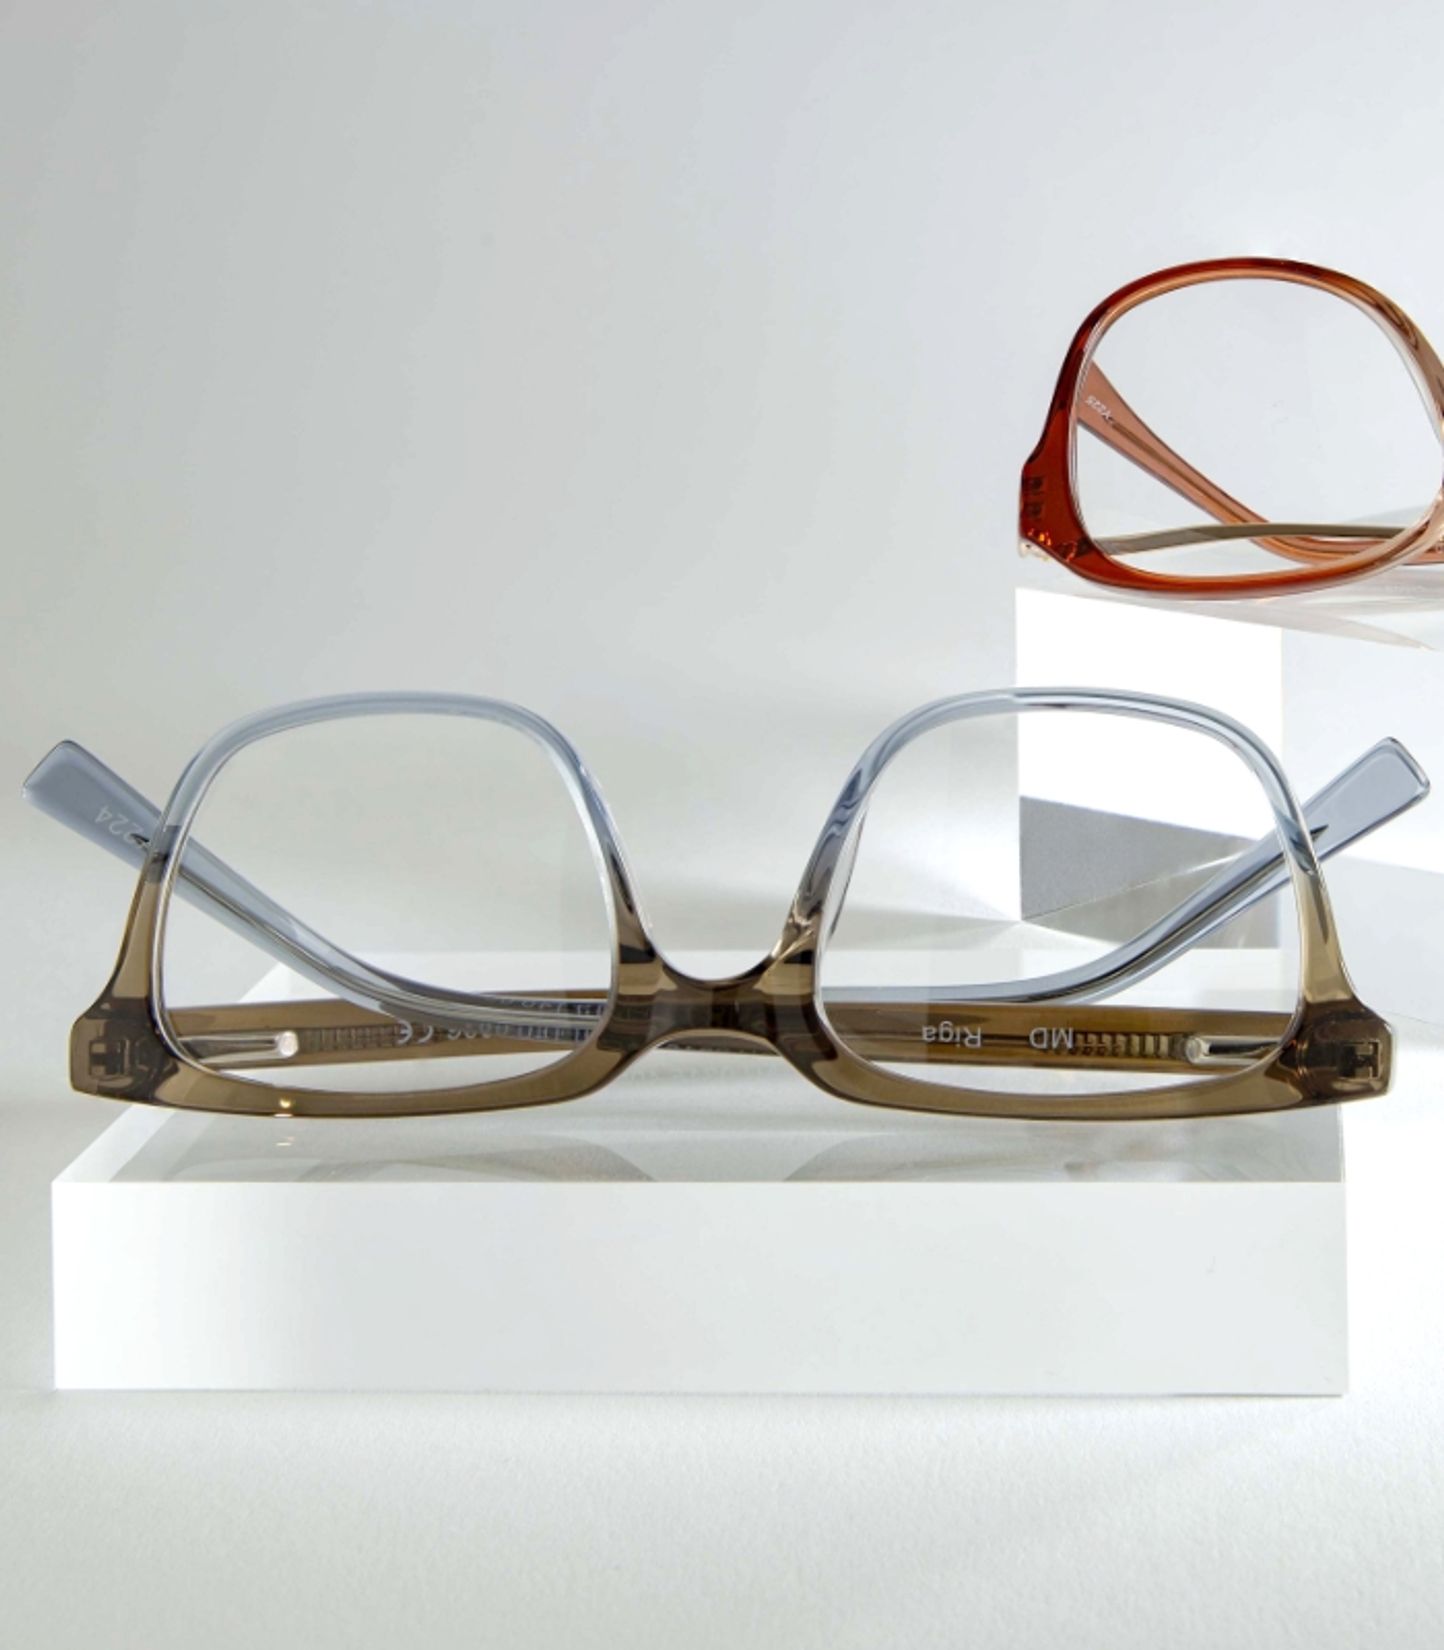 vloek melk wit Voorschrijven Online brillen bestellen - Brillen24 - Brillen24 (NL)